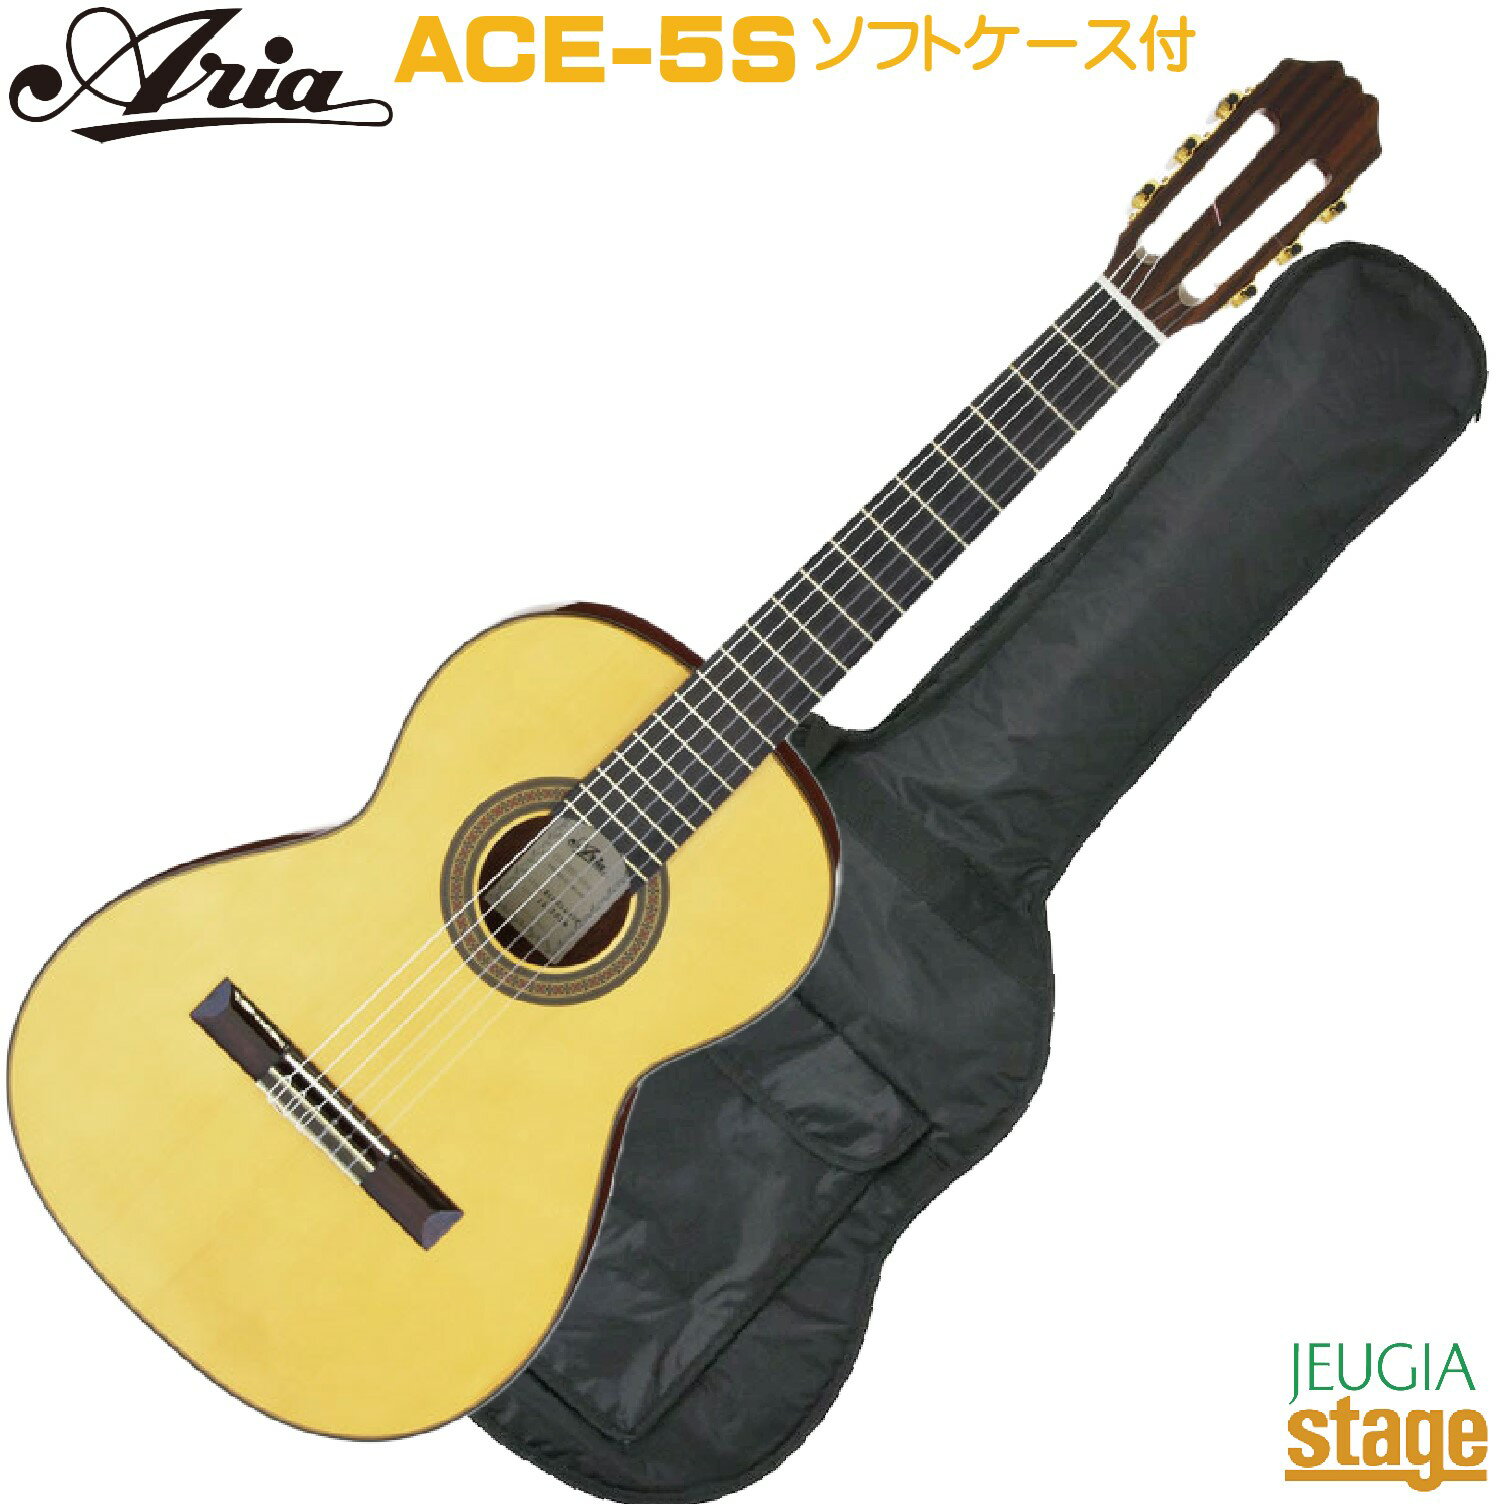 ARIA ACE-5S 610 610mmスケールで弾き易く、明るく乾いた音色が魅力の本場スペイン製ギター。 本格使用はもちろん初めての方にもおすすめです！ ギター製作技術の伝統を誇るスペインで委託製作され、 バインディングや飾り部分には一切プラスチックを使用せず、 高級手工ギターと同じように木象眼（モザイク）を使用しています。 スペイン製ギターが持つ特有の明るい音色をお楽しみください。 スペック ・Top：Solid Spruce ・Back & Sides：Sapelli ・Neck：Mahogany ・Fingerboard：Rosewood ・Scale：610 mm ・Nut width：50 mm ・MADE IN SPAIN ※商品画像はサンプルです。 ★掲載の商品は店頭や他のECサイトでも並行して販売しております。在庫情報の更新には最大限の努力をしておりますが、ご注文が完了しましても売り切れでご用意できない場合がございます。 　また、お取り寄せ商品の場合、生産完了・メーカー価格改定などの理由でご用意できない場合がございます。 　その際はご注文をキャンセルさせていただきますので、予めご了承くださいませ。 ★お届け先が北海道や沖縄、その他離島の場合、「送料無料」と表記の商品であっても別途中継料や送料を頂戴いたします。その際は改めてご連絡を差し上げますのでご了承ください。